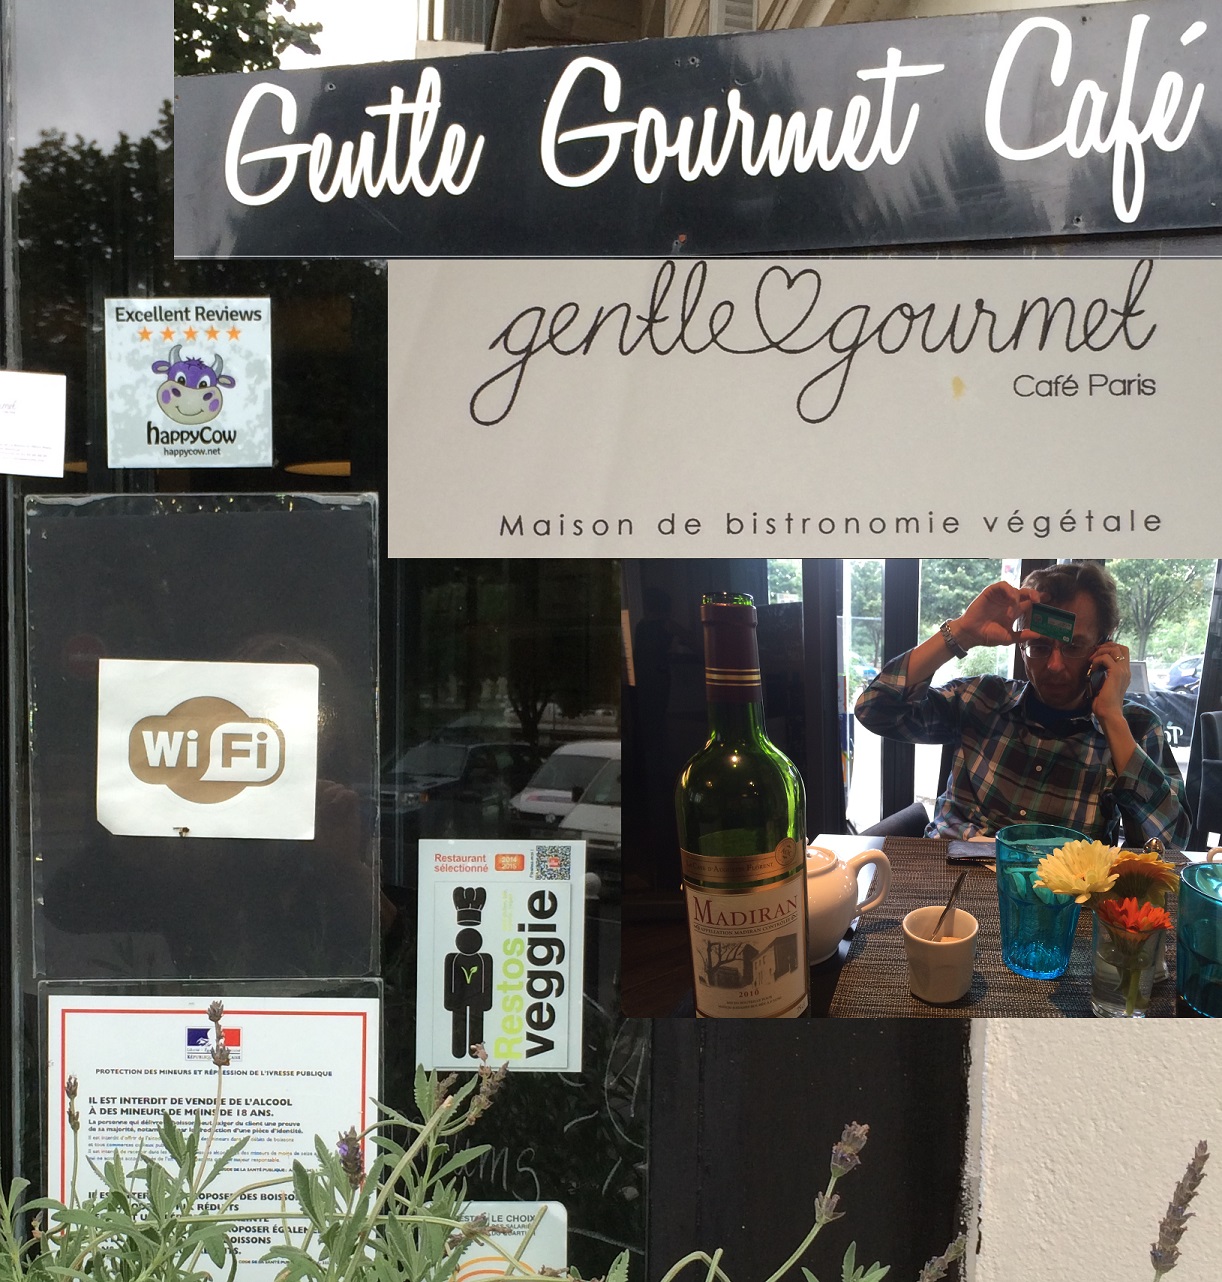 07-05 15:45 Gentle Gourmet Cafe